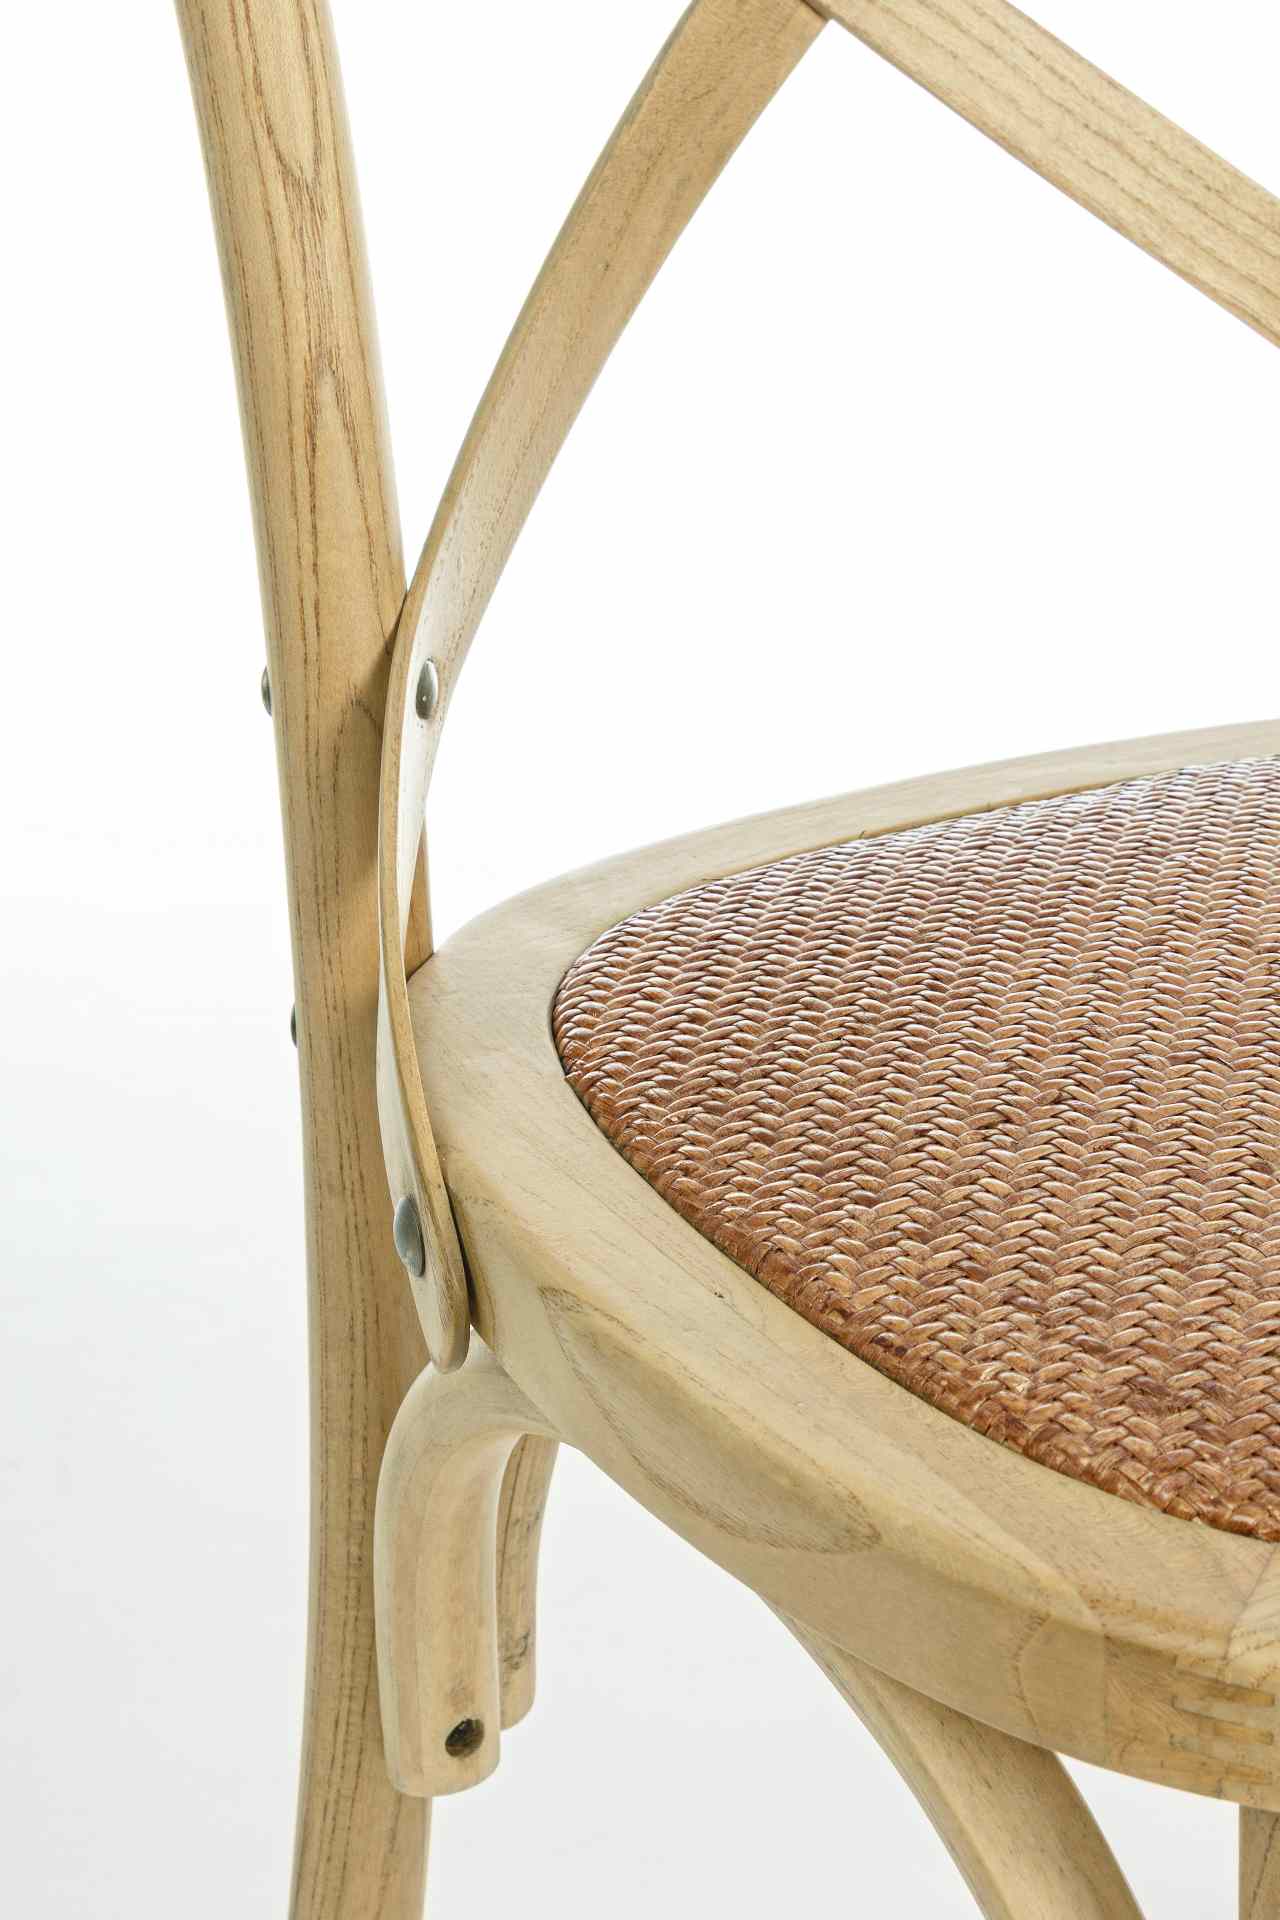 Der Stuhl Cross überzeugt mit seinem klassischen Design. Gefertigt wurde der Stuhl aus Ulmenholz, welches einen braunen Farbton besitzt. Die Sitz- und Rückenfläche ist aus Rattan gefertigt. Die Sitzhöhe beträgt 46 cm.